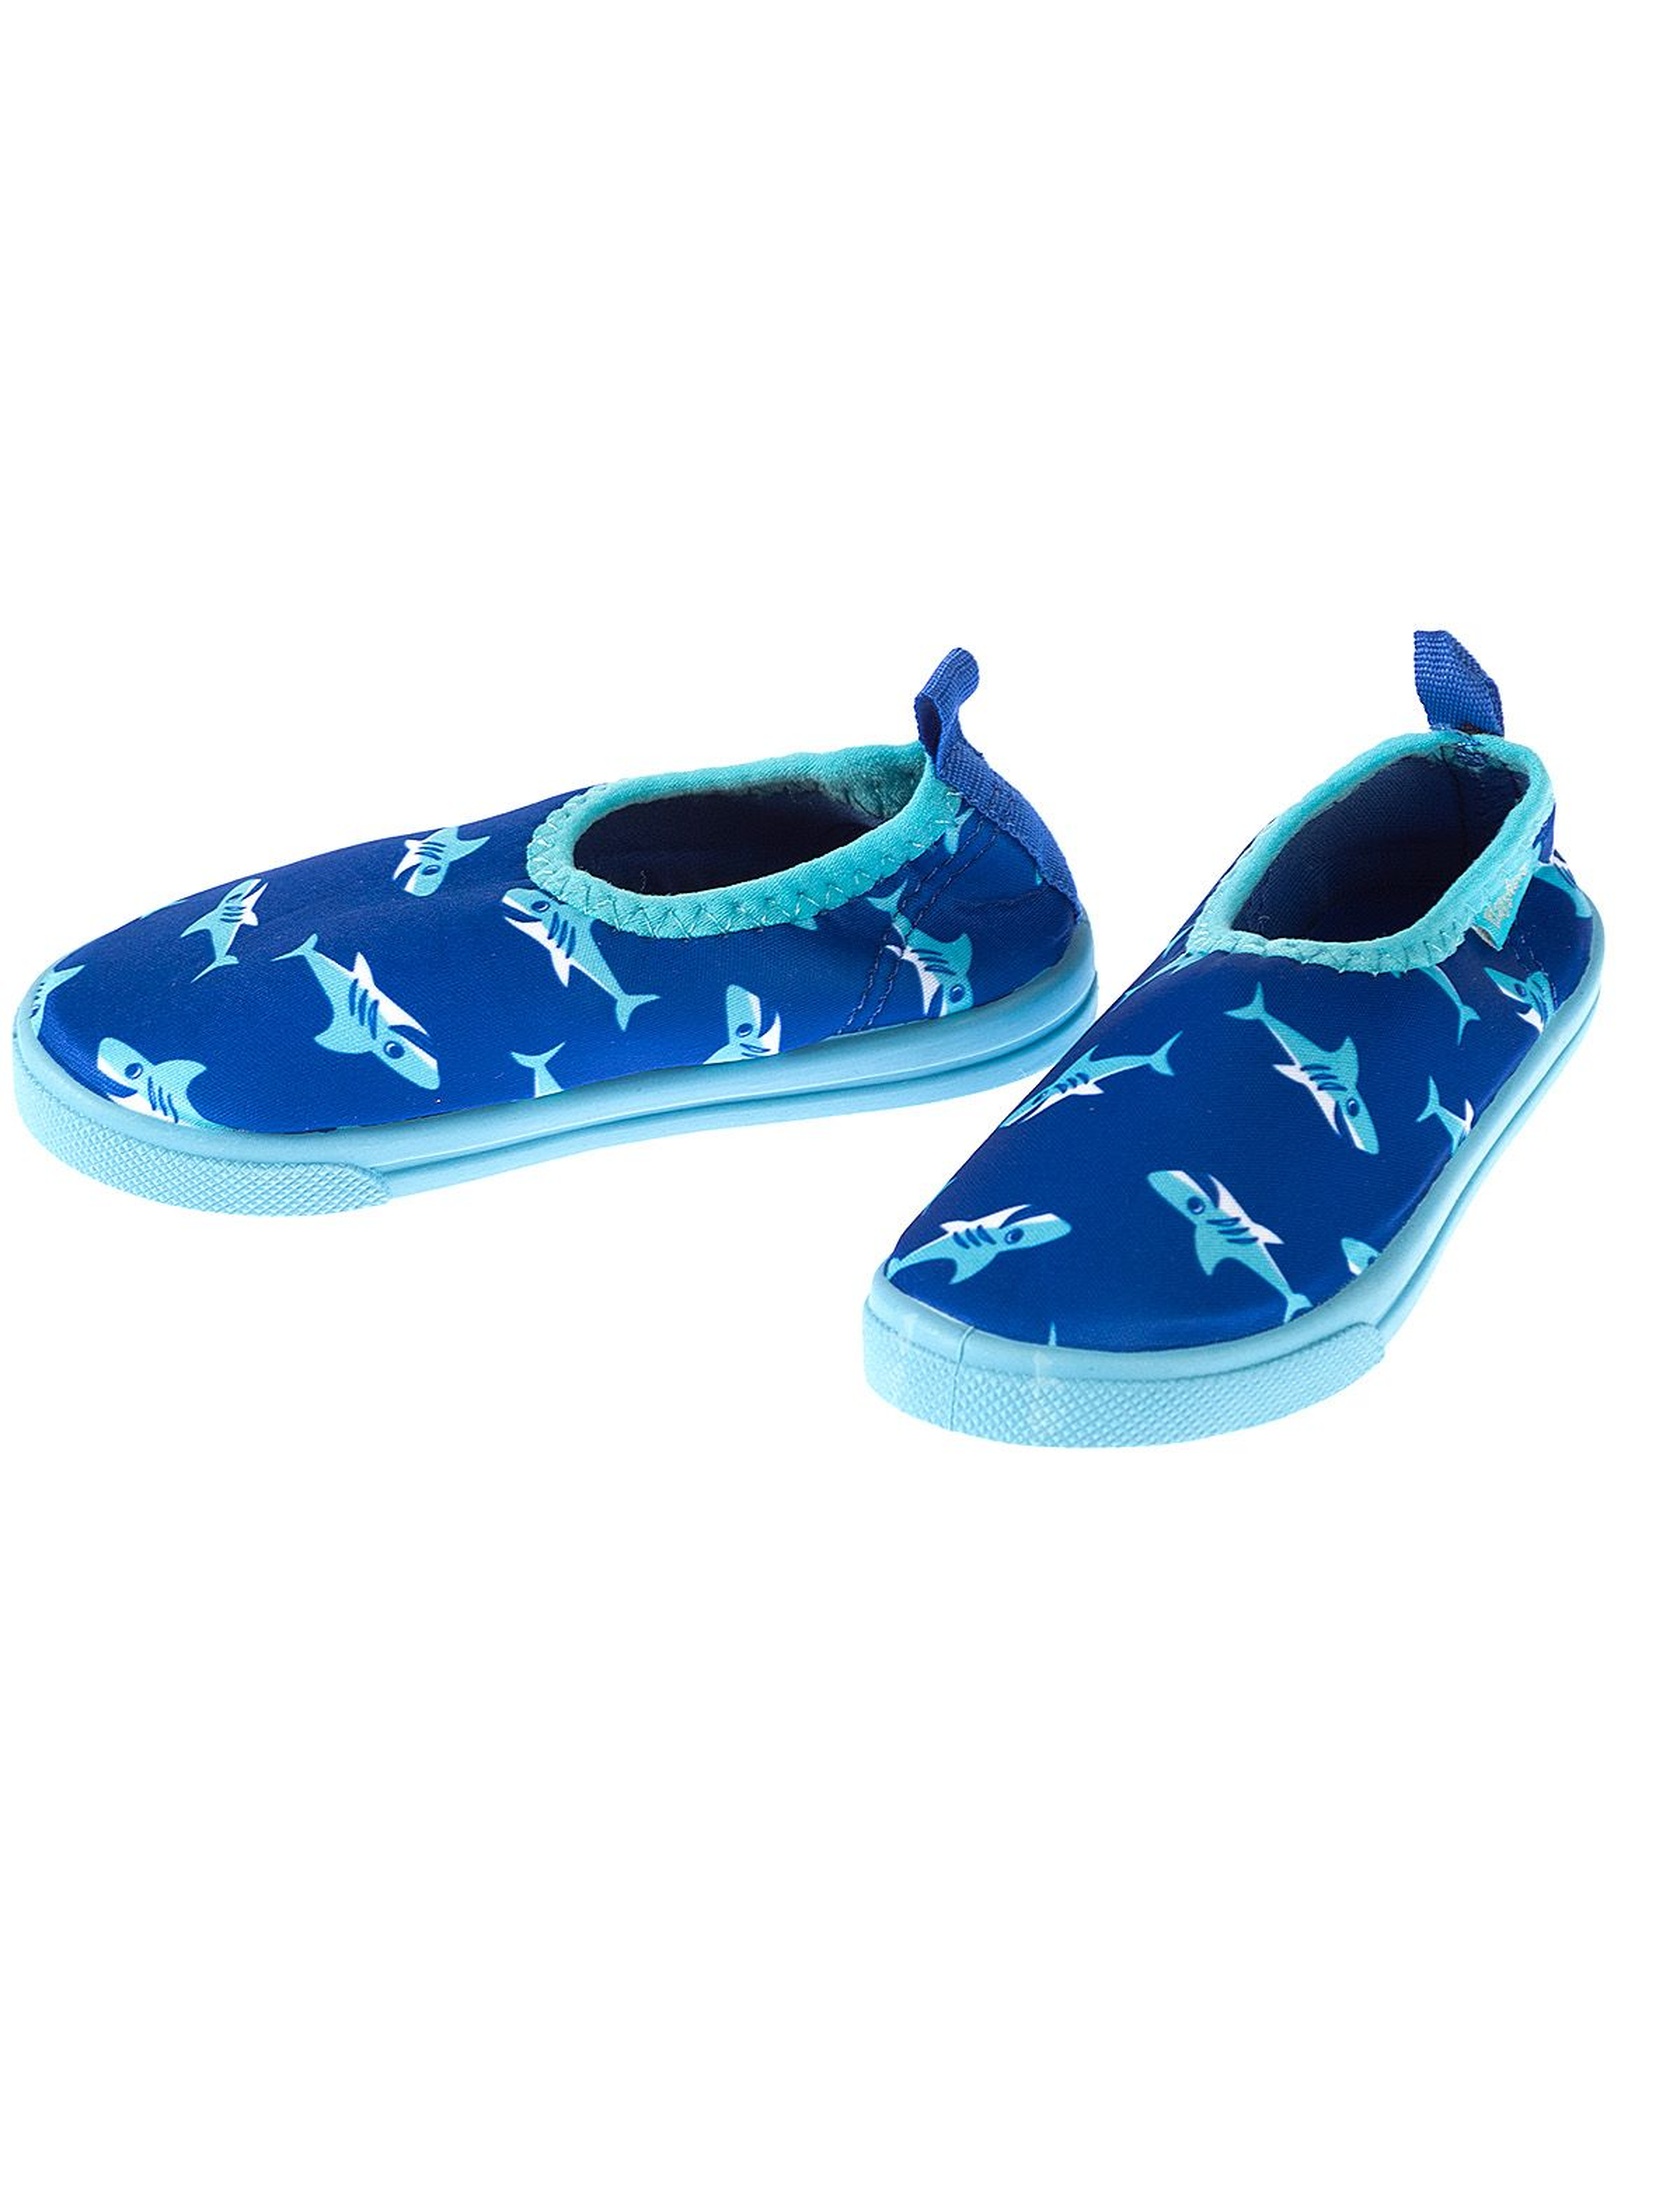 Buty chłopięce do wody niebieskie w rekiny